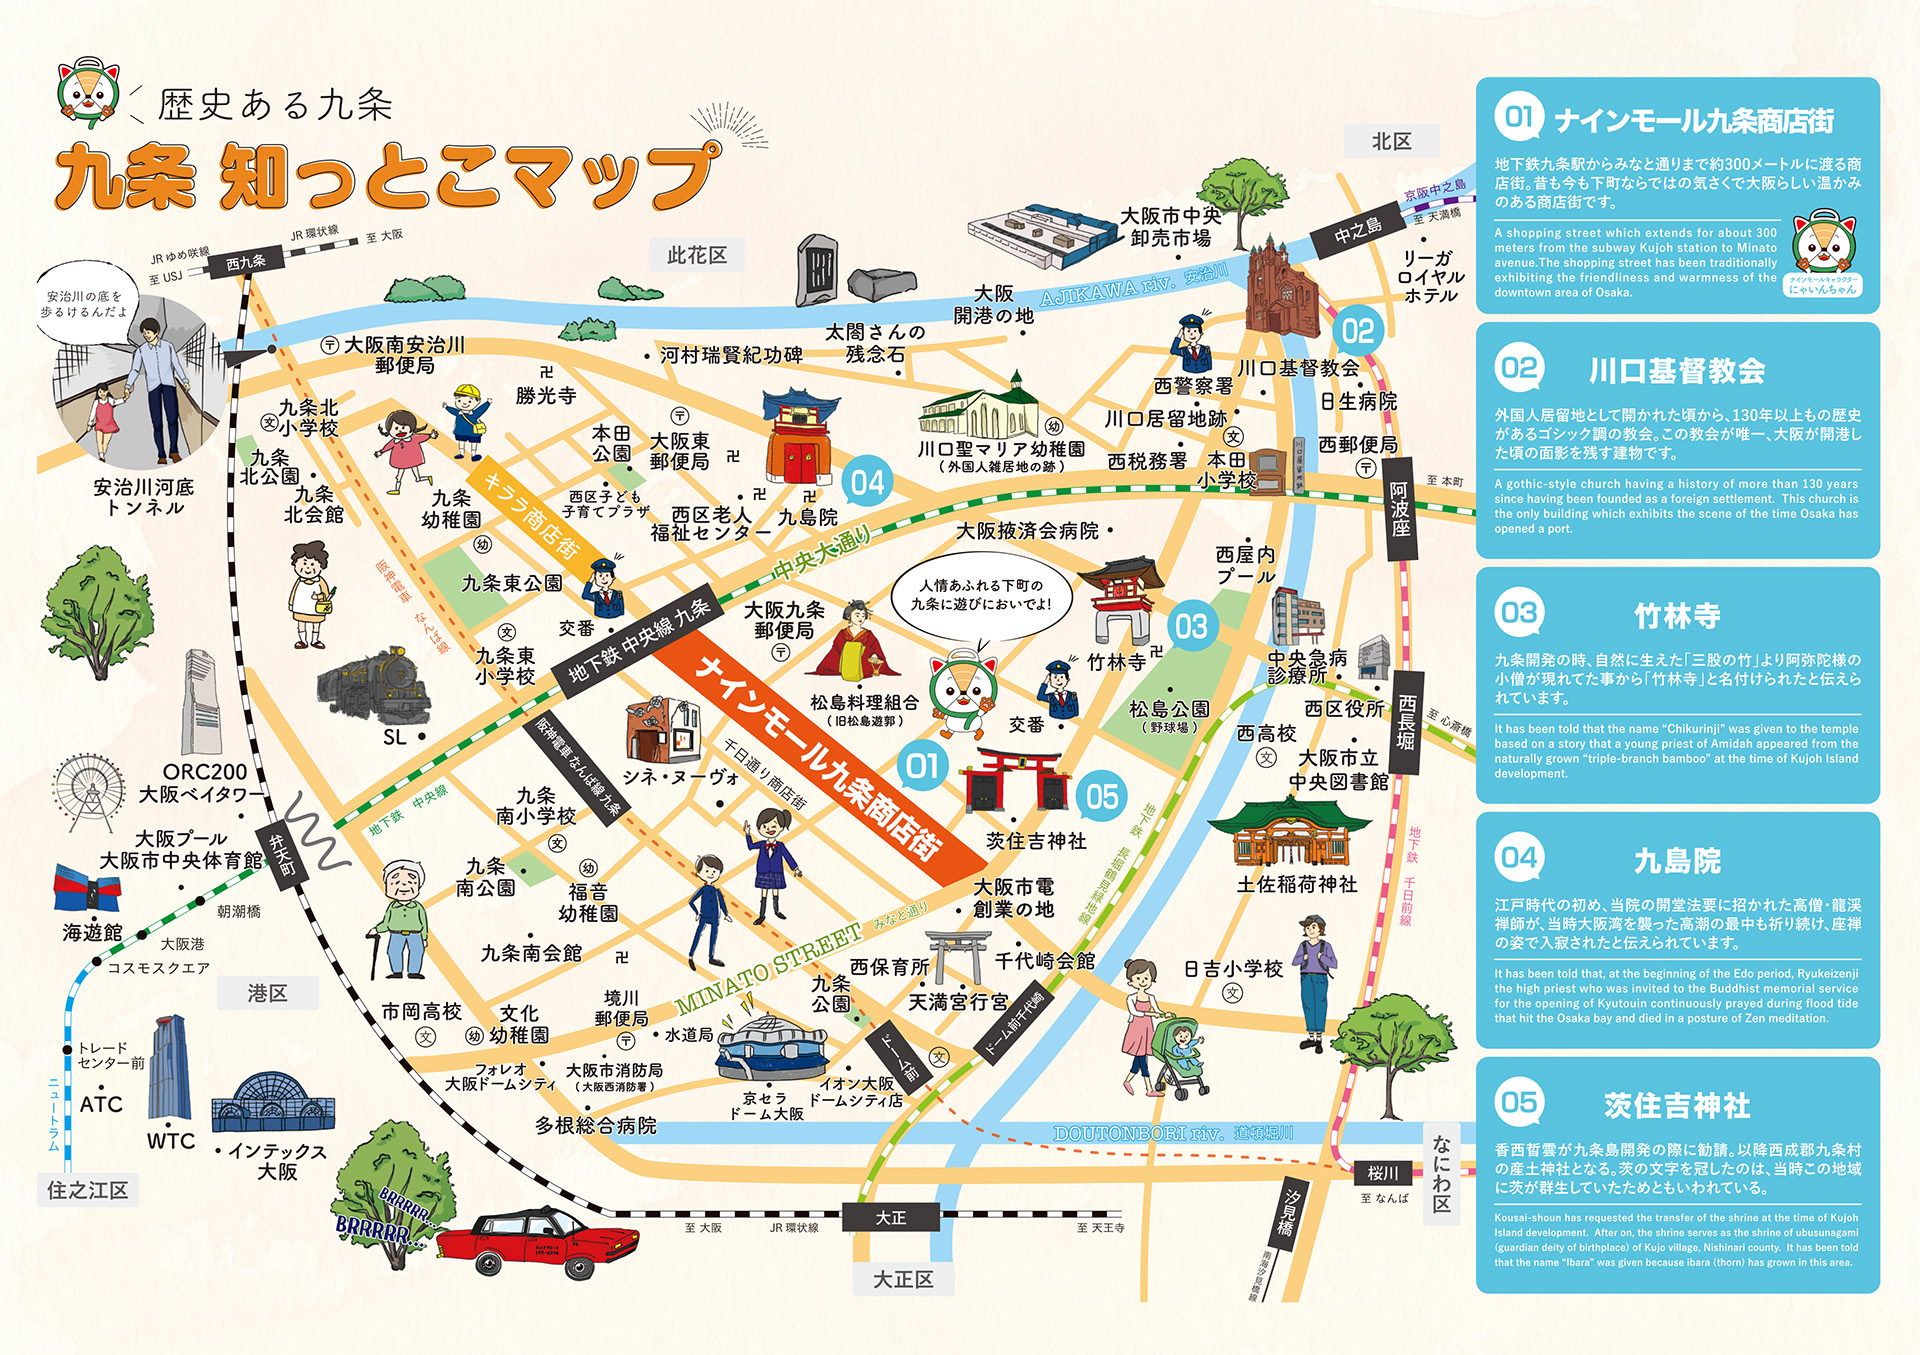 歴史ある九条すみずみ知っとこマップ｜大阪市西区九条とナインモール九条の歴史